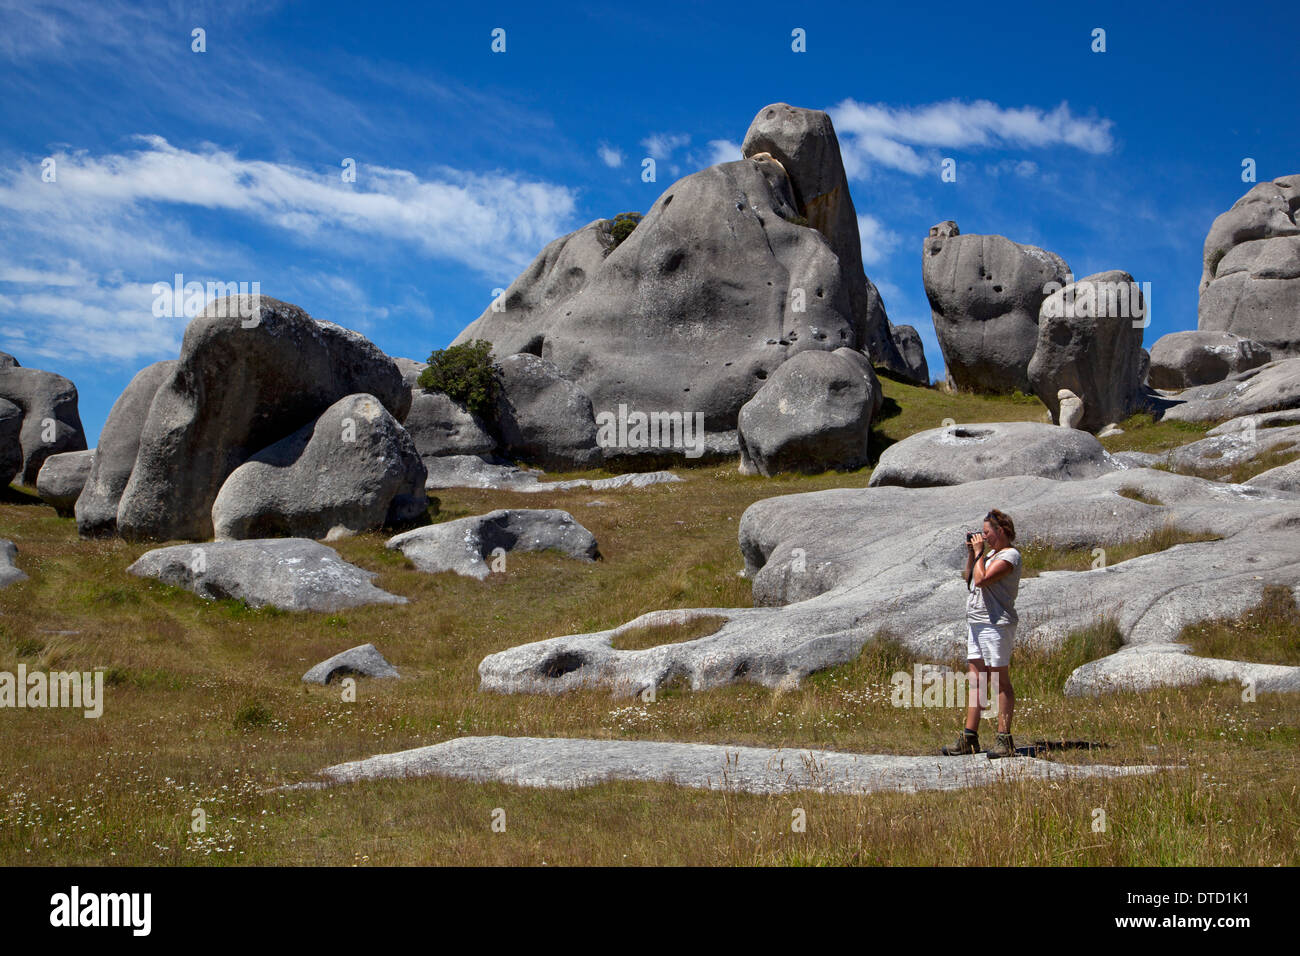 La colline du château, Kura Tawhiti, formations de roche calcaire, Arthurs pass, île du Sud, Nouvelle-Zélande Banque D'Images